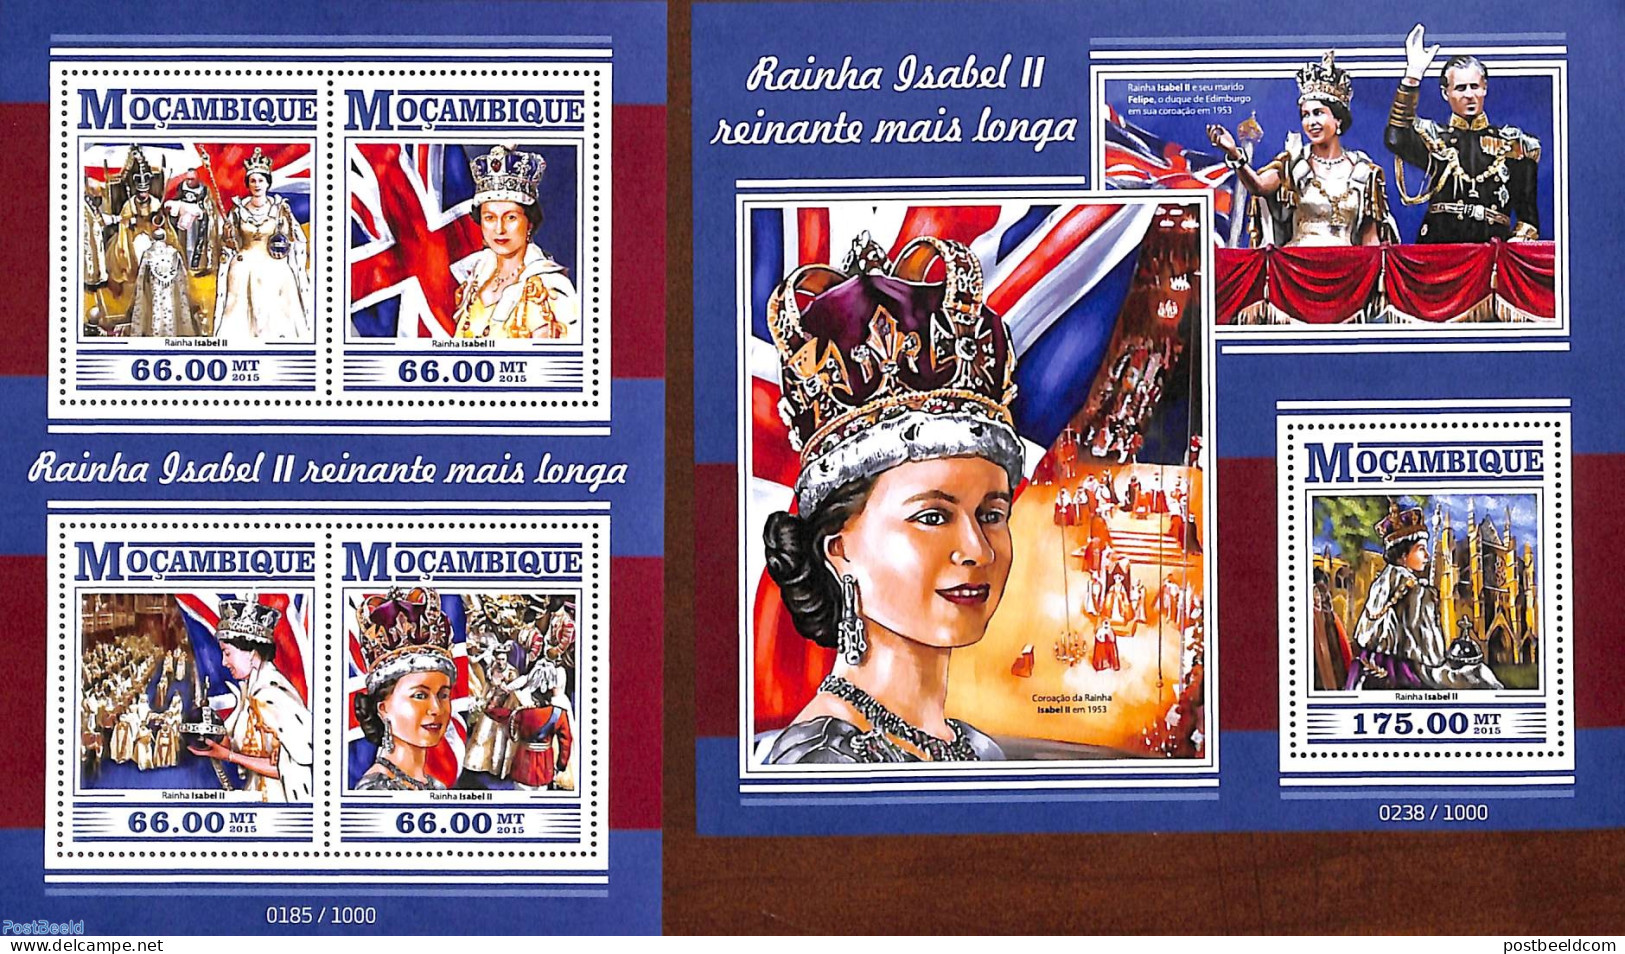 Mozambique 2015 Queen Elizabeth II, Longest Reigning Queen 2 S/s, Mint NH, History - Kings & Queens (Royalty) - Royalties, Royals